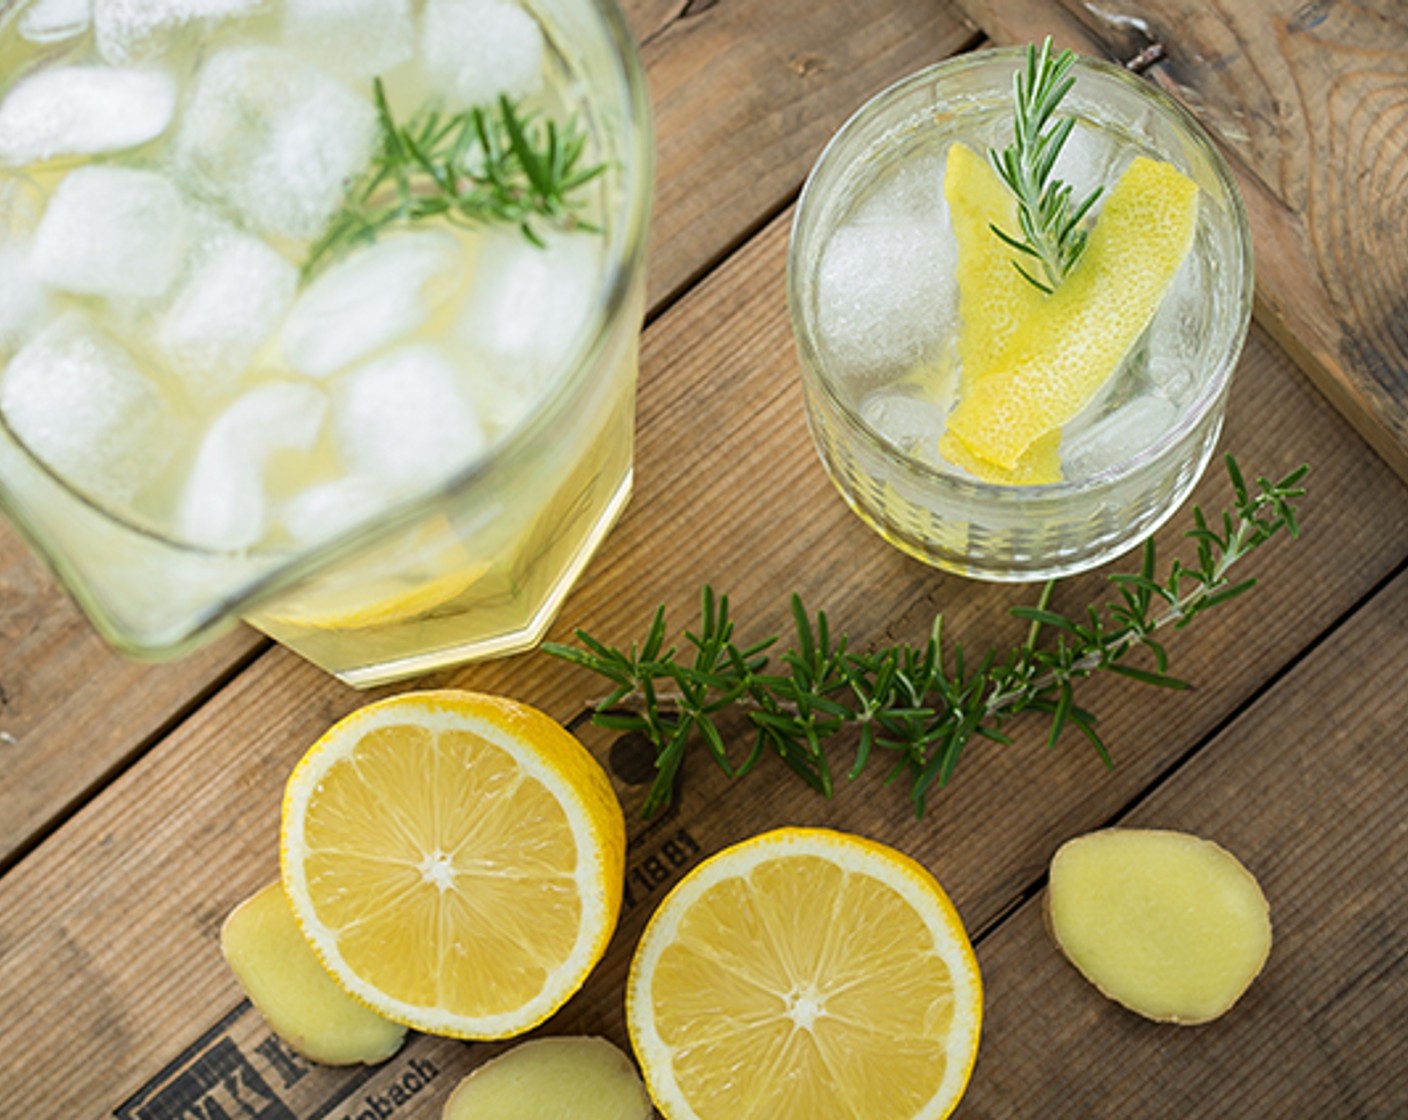 Schritt 5 Für 1 Liter Limonade werden 100 ml Sirup und 900 ml kaltes Mineralwasser in eine Karaffe gemischt. Das Ganze kann mit Zitronenscheiben und einem Rosmarinzweig serviert werden.